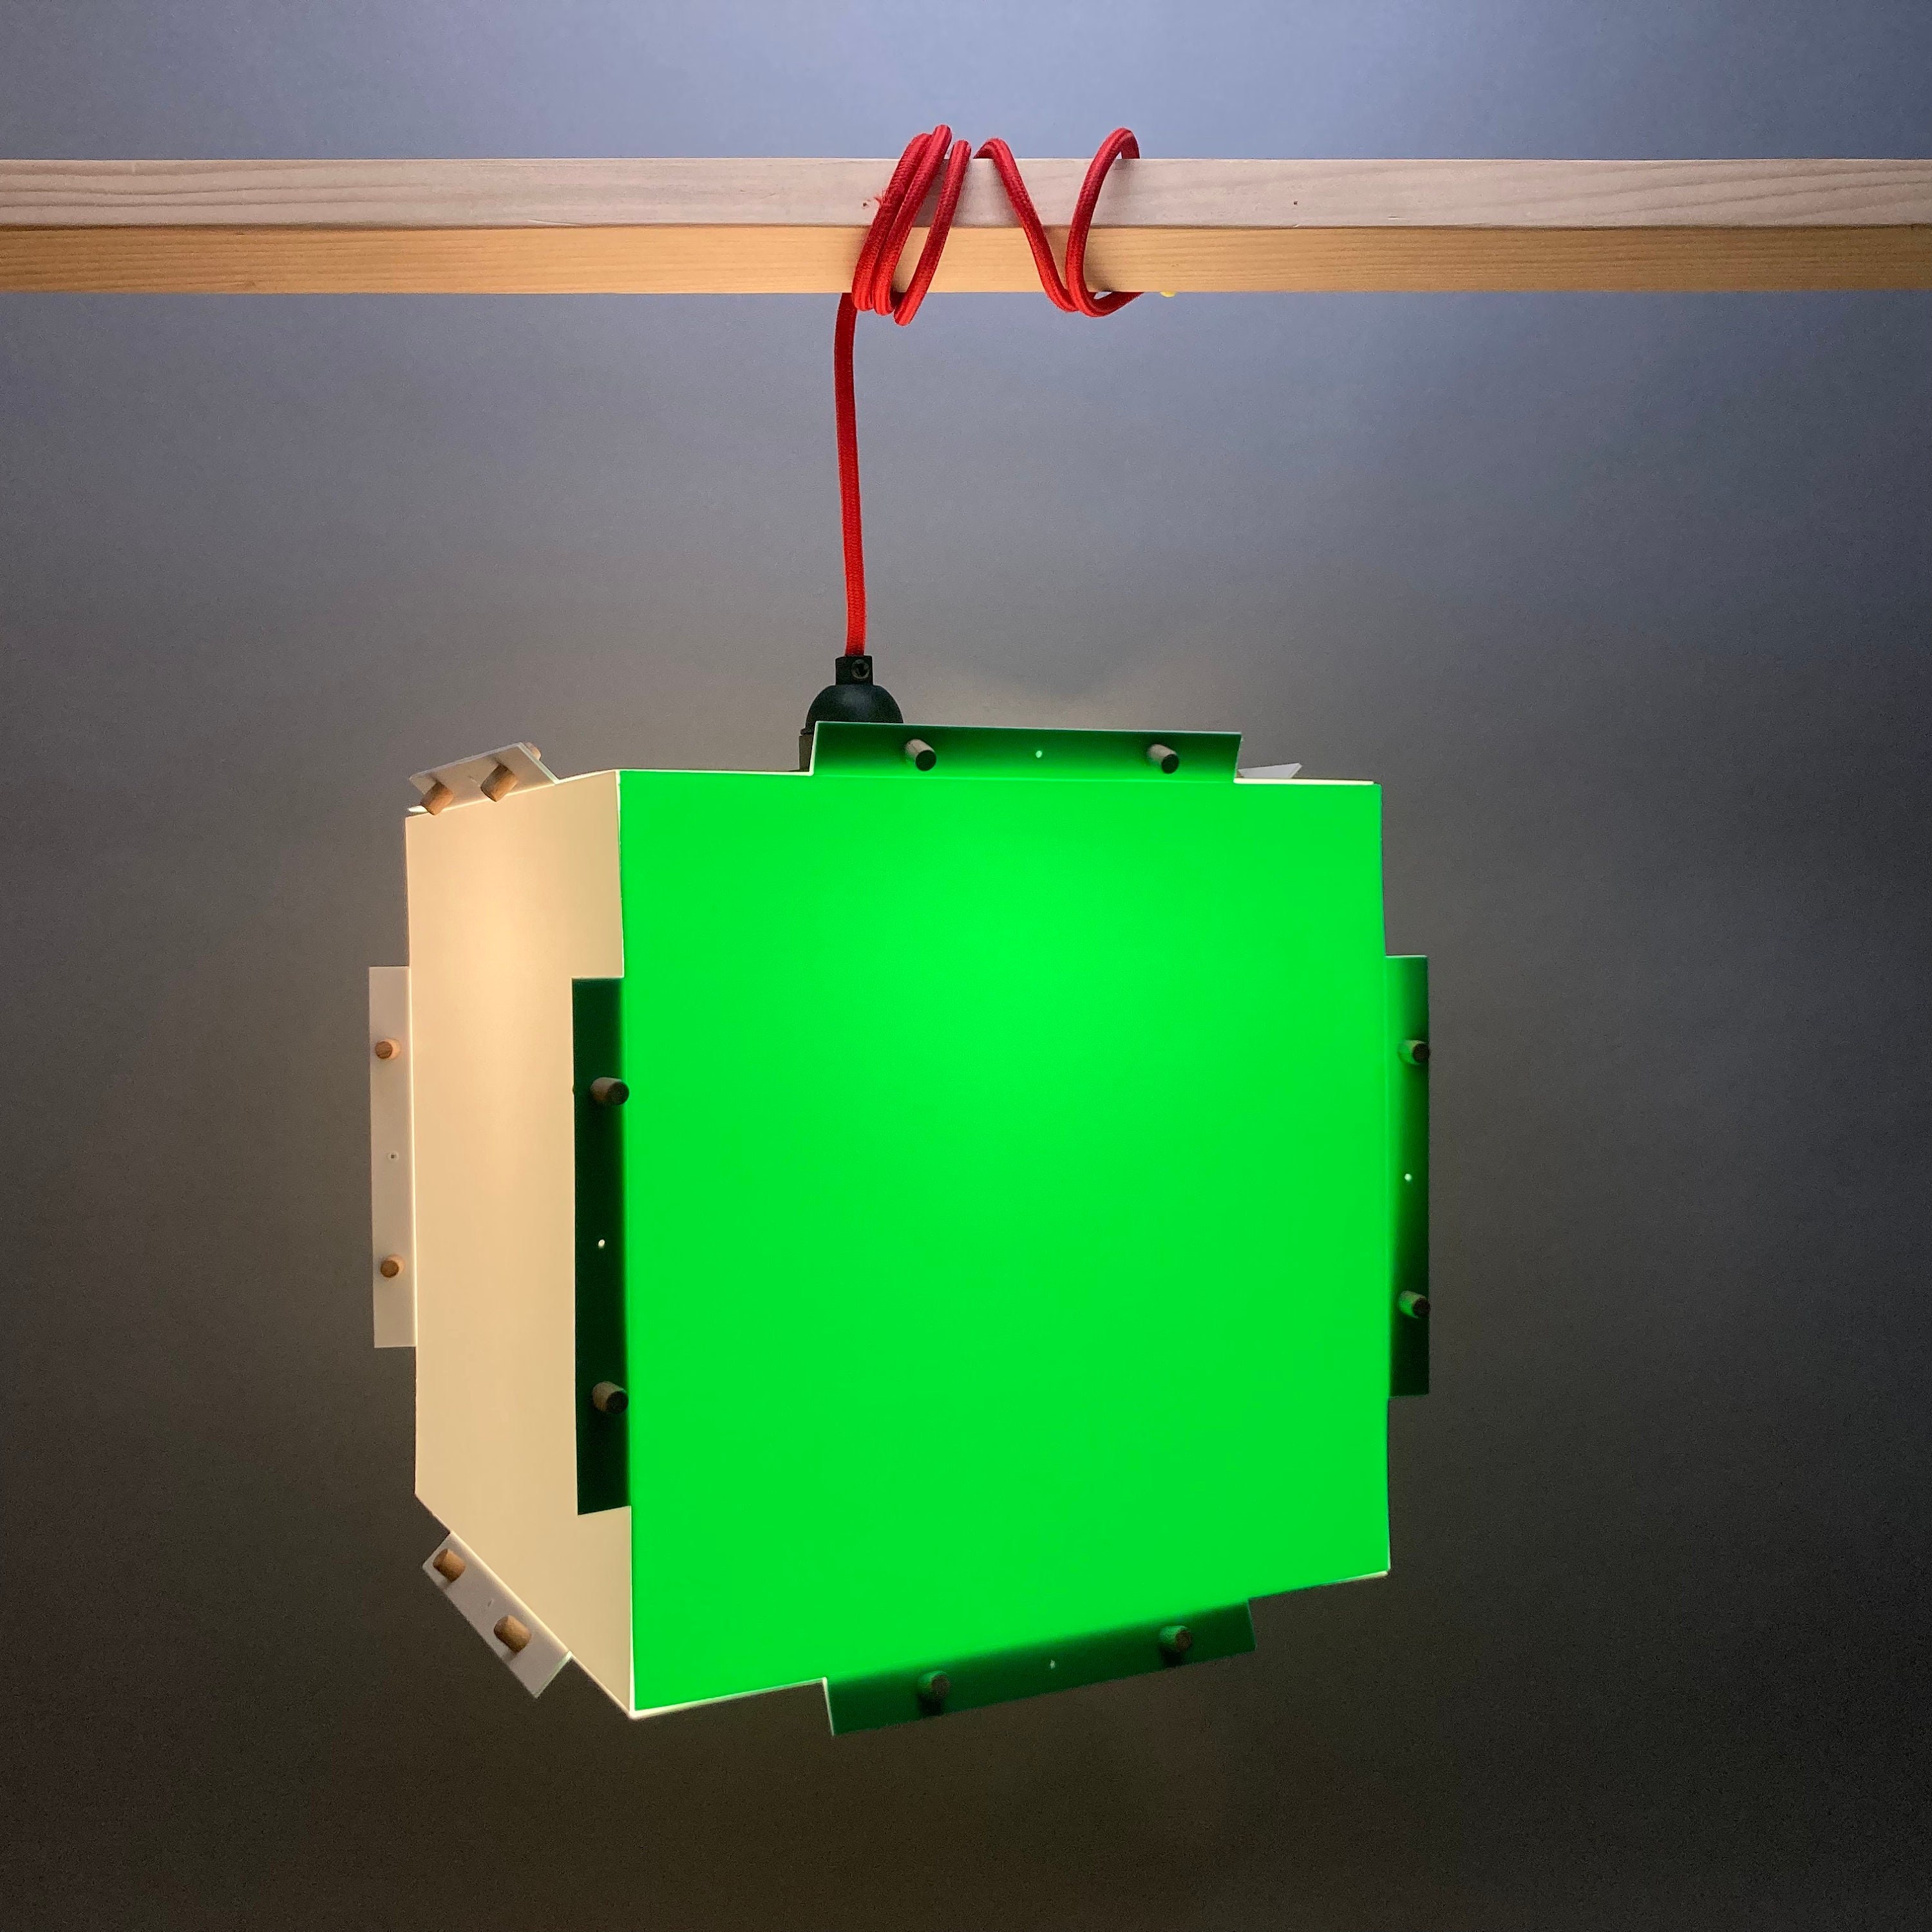 lampe couleur style origami facile à monter suspendre ou poser. cube lumineux vert et blanc. luminaire design minimaliste incassable.